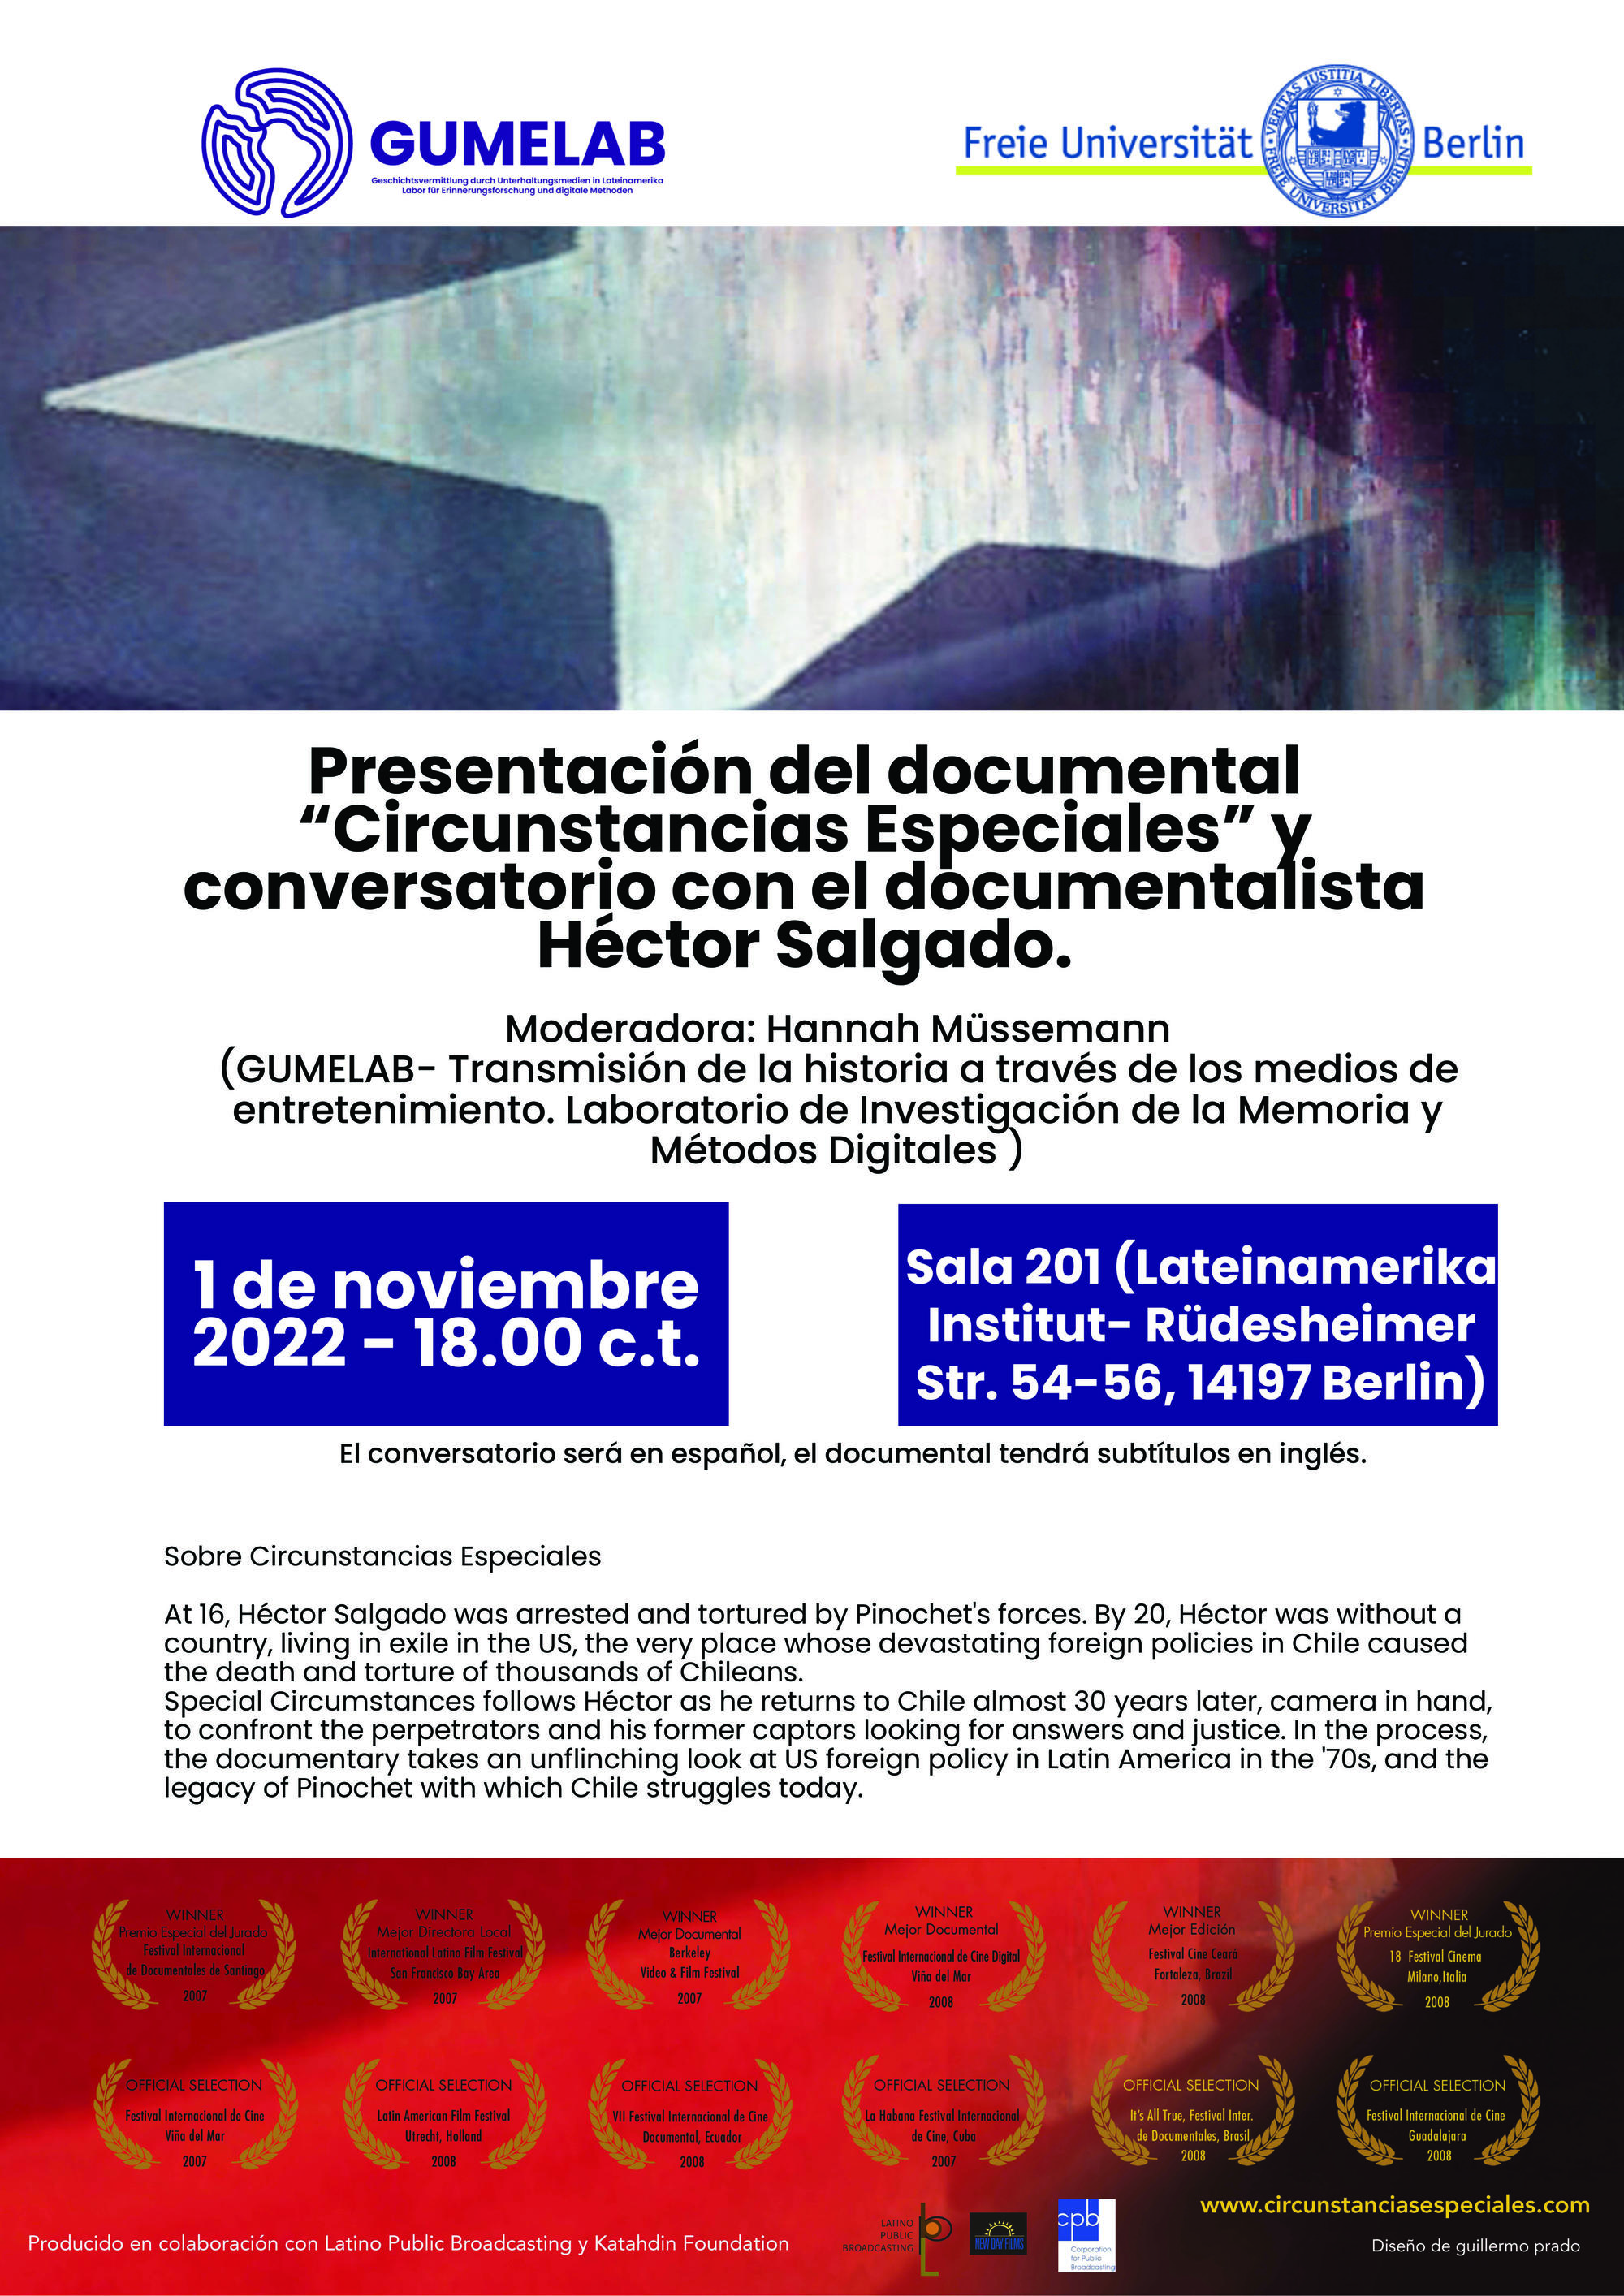 Proyección del documental "Special circumstances", 01.11.22